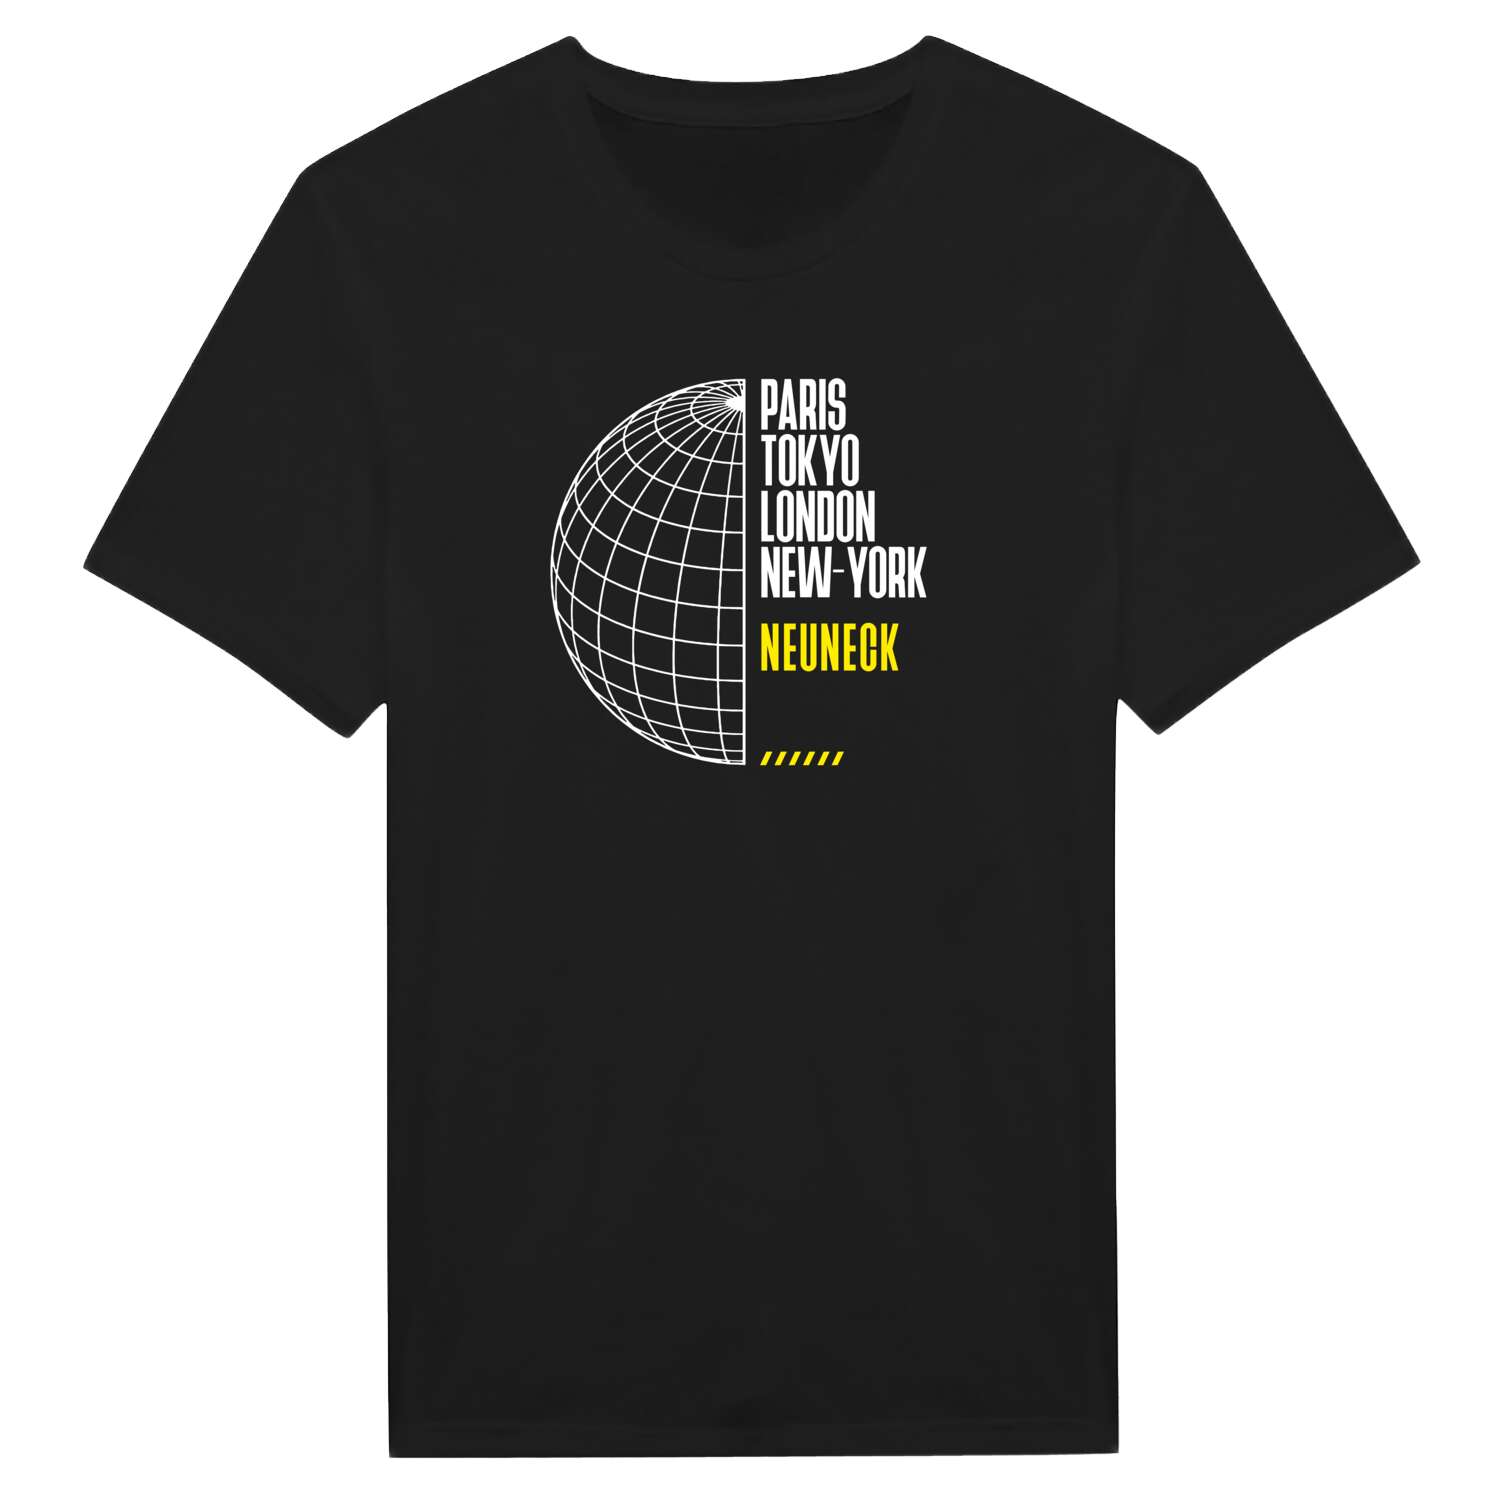 Neuneck T-Shirt »Paris Tokyo London«